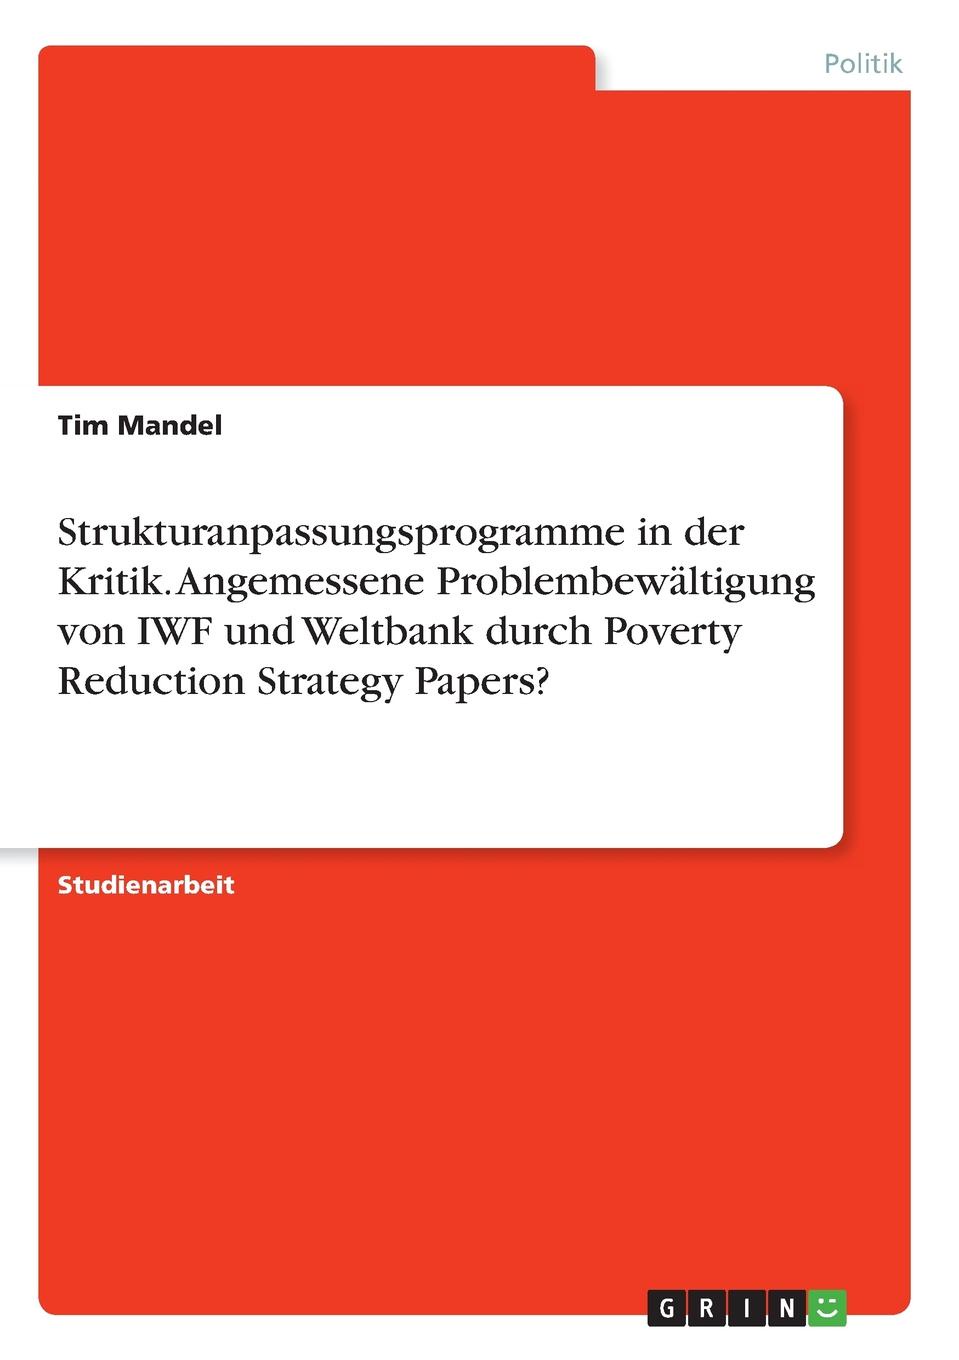 Strukturanpassungsprogramme in der Kritik. Angemessene Problembewaltigung von IWF und Weltbank durch Poverty Reduction Strategy Papers.